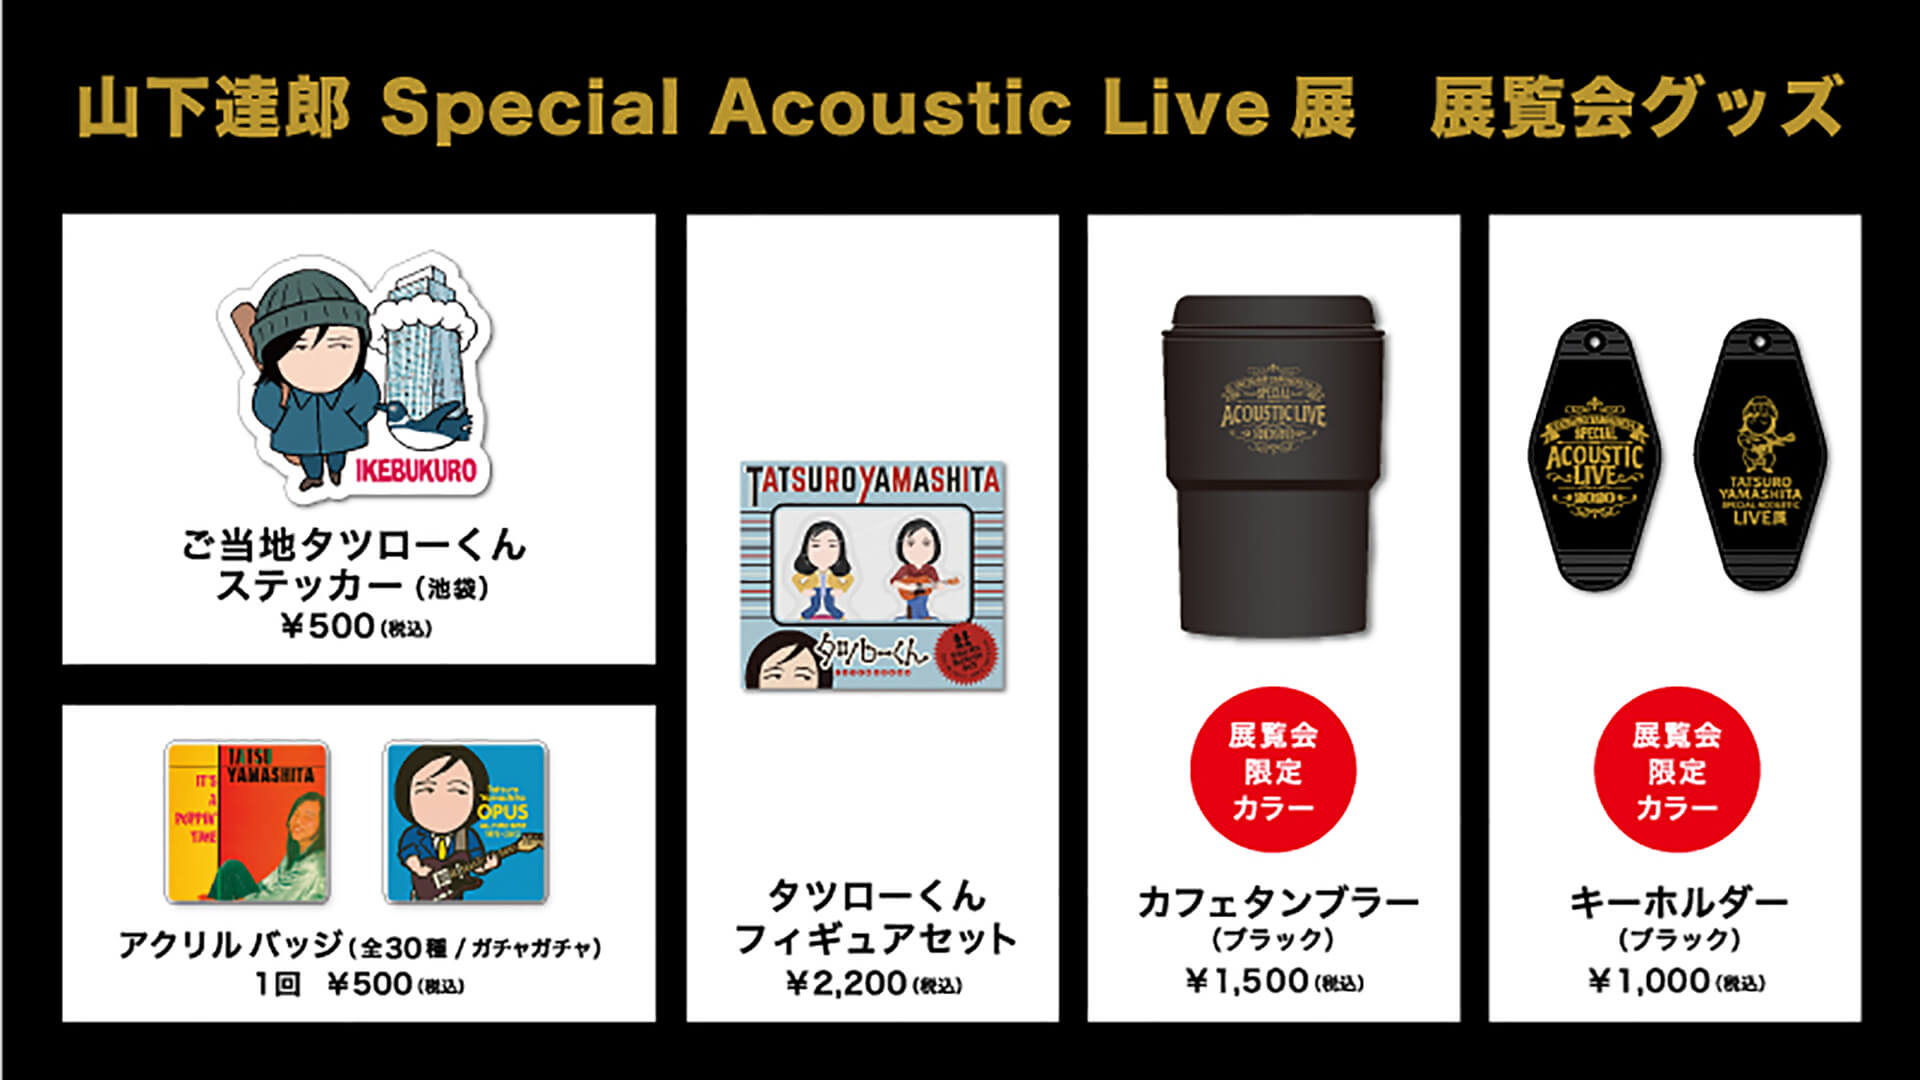 山下達郎 Special Acoustic Live展